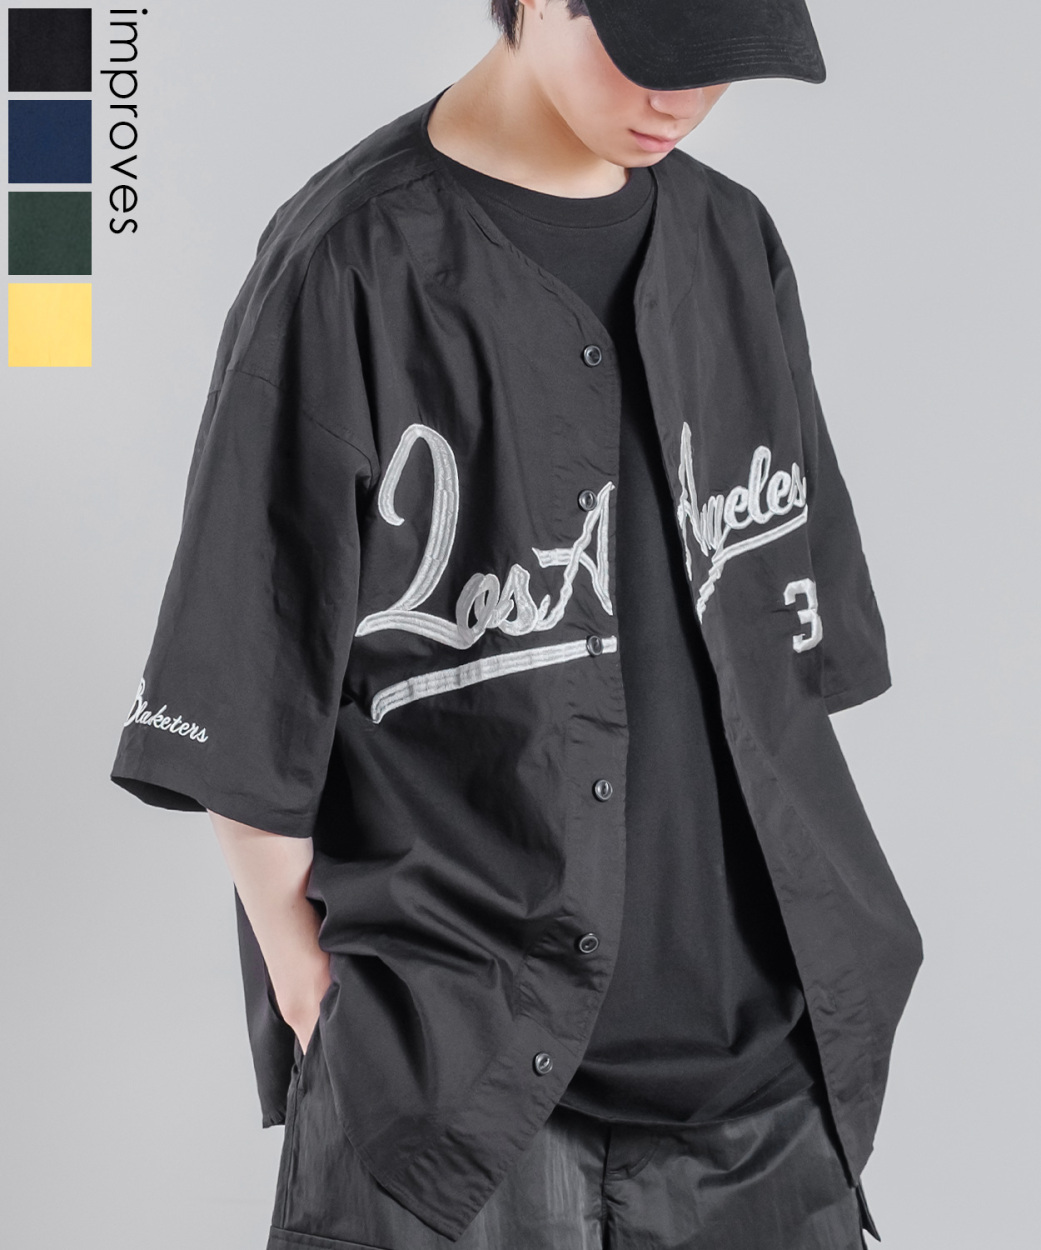 スタジアムロゴ 刺しゅう 半袖 ベースボールシャツ メンズ ノーカラーシャツ 野球シャツ ゲームシャツ オーバーサイズ ビッグサイズ 韓国 ストリート